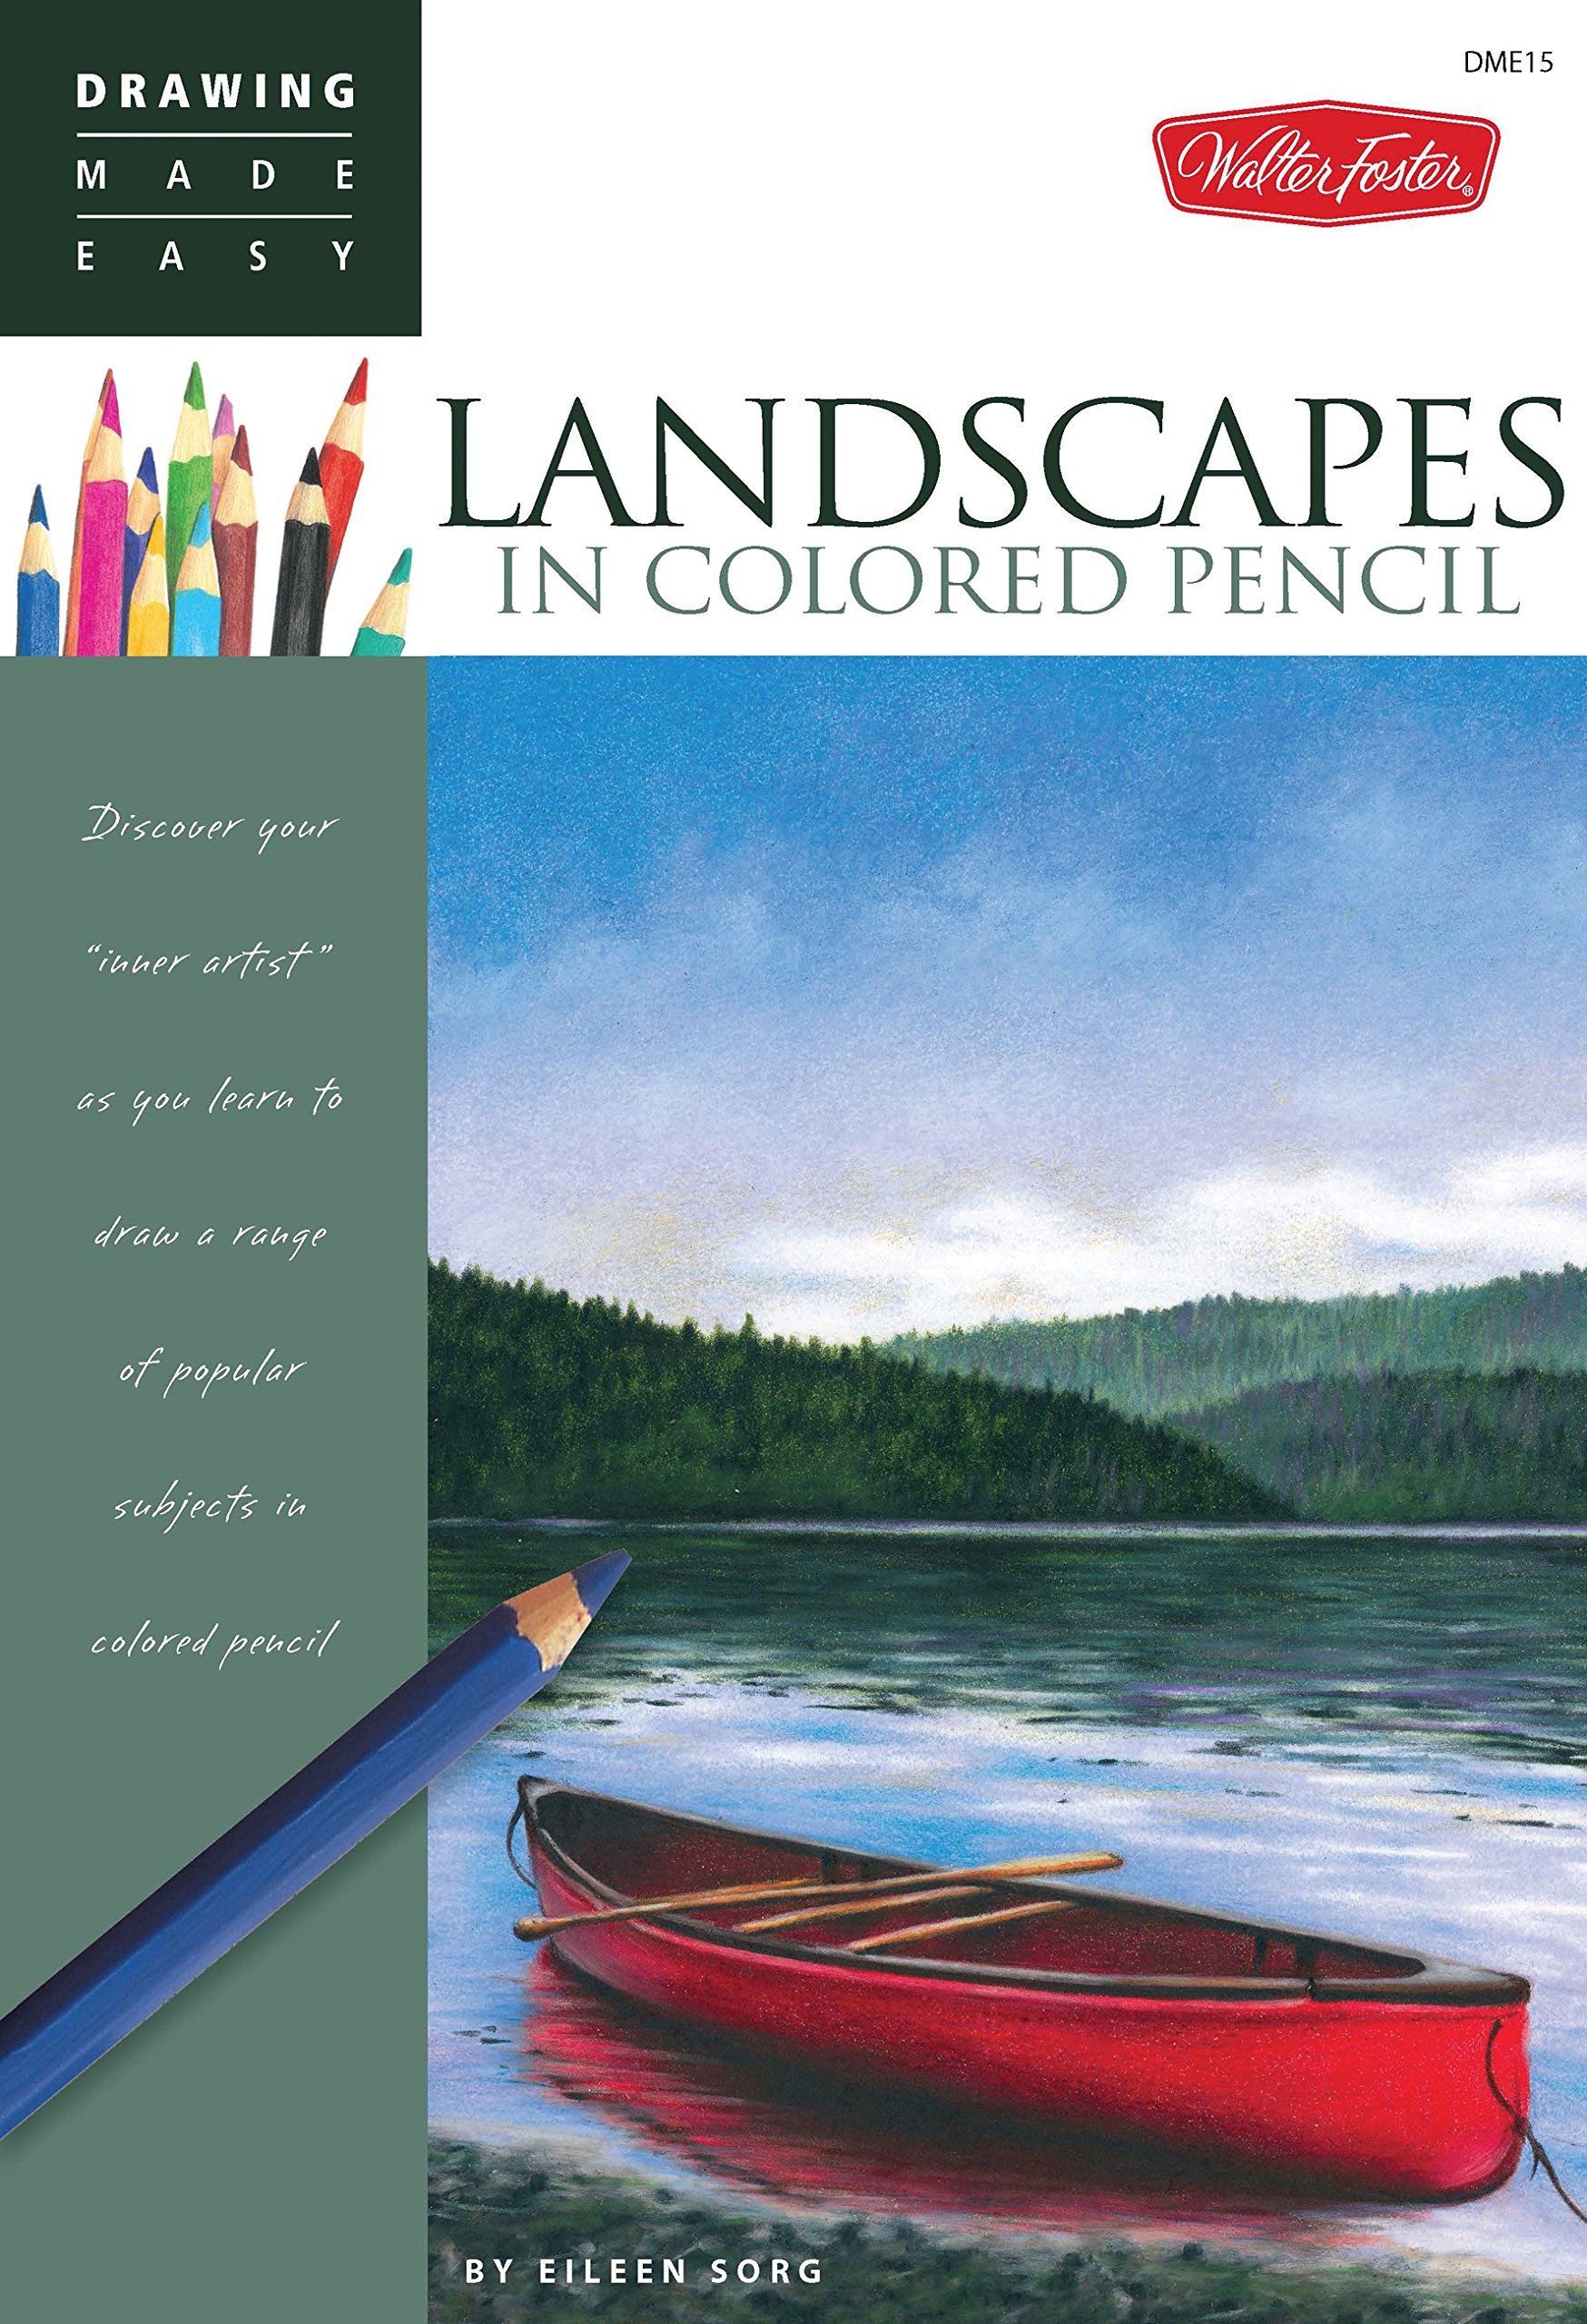 14,381 Color Pencil Landscape Images, Stock Photos & Vectors | Shutterstock